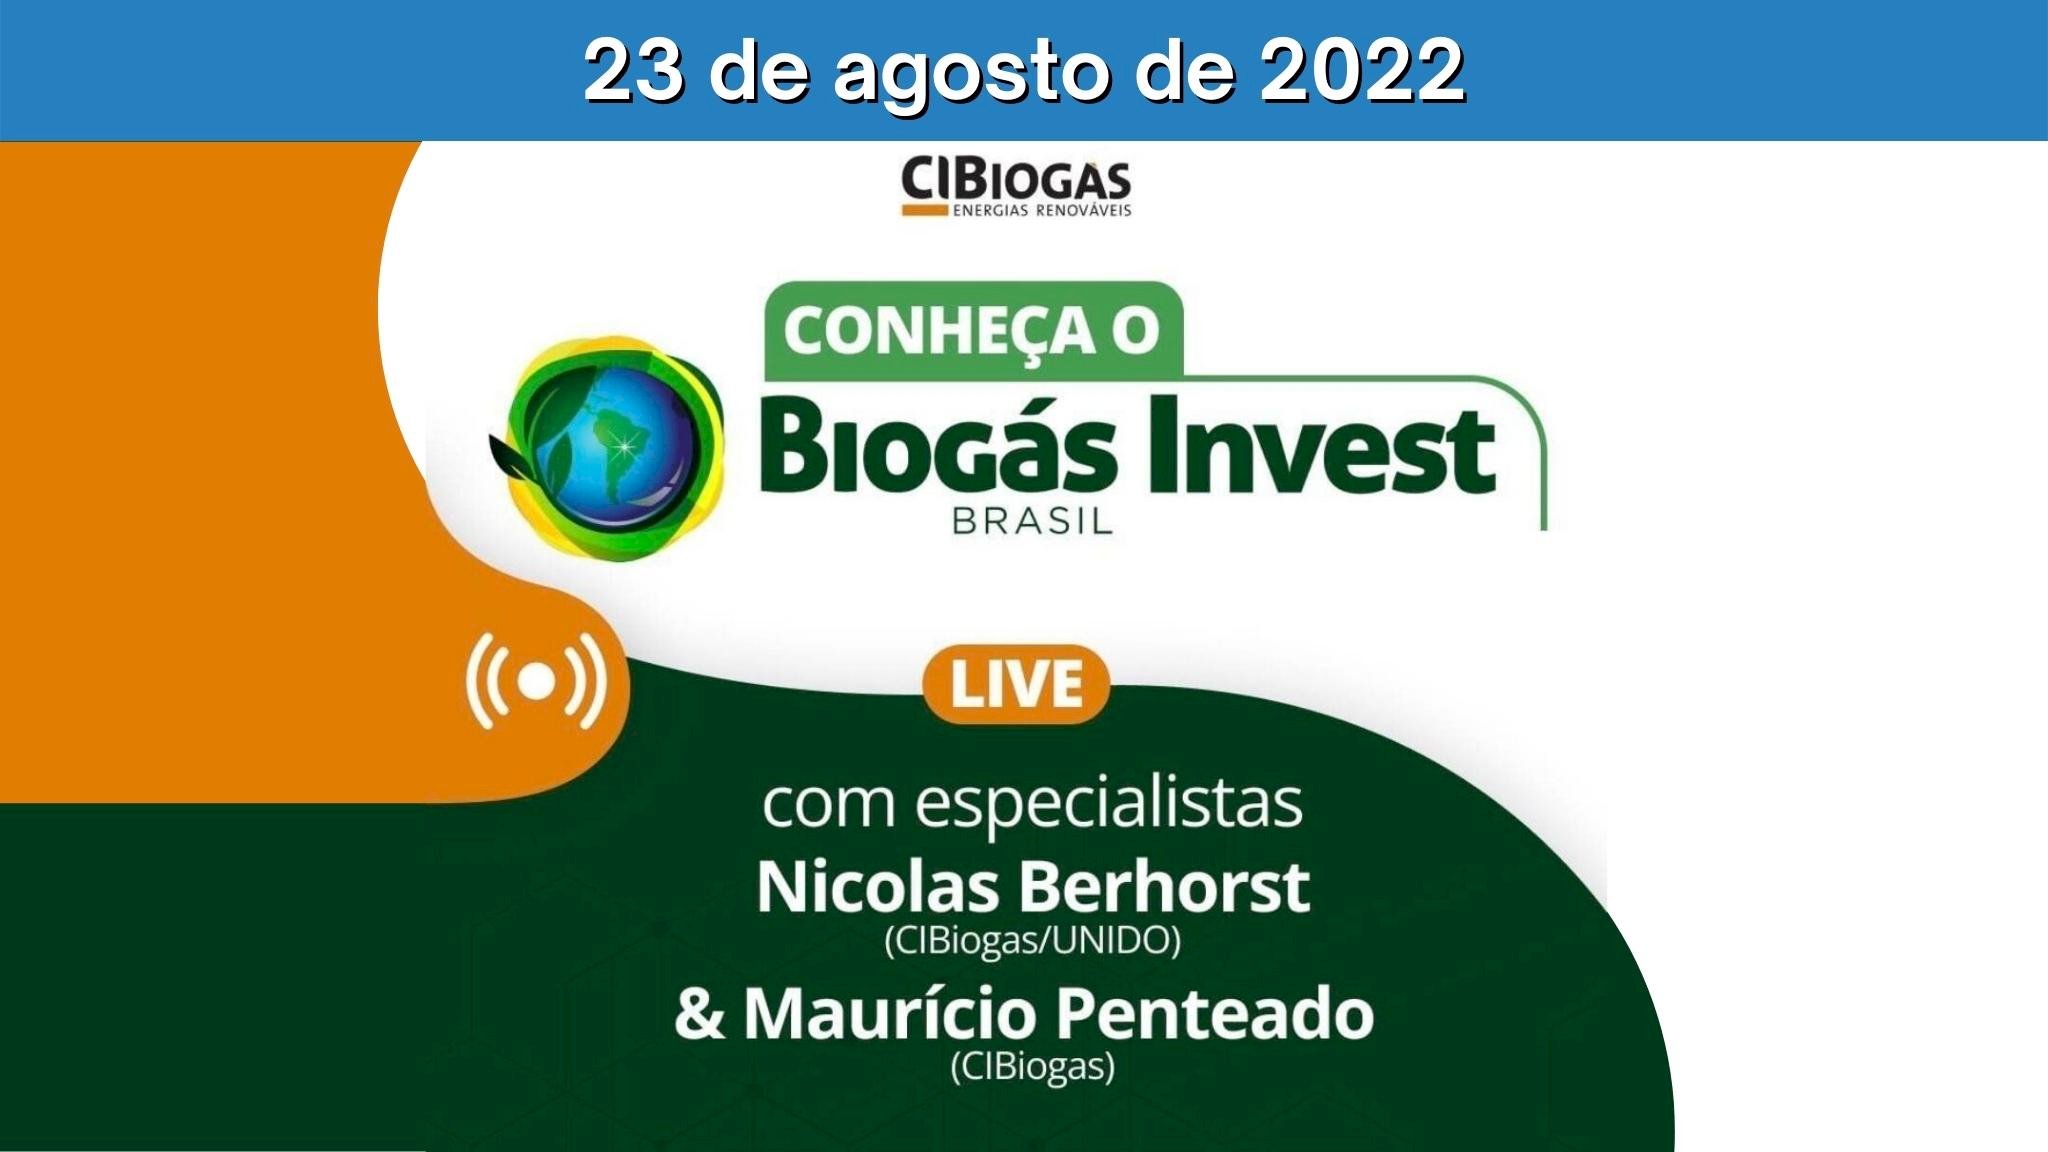 Live: Conheça o Biogás Invest Brasil